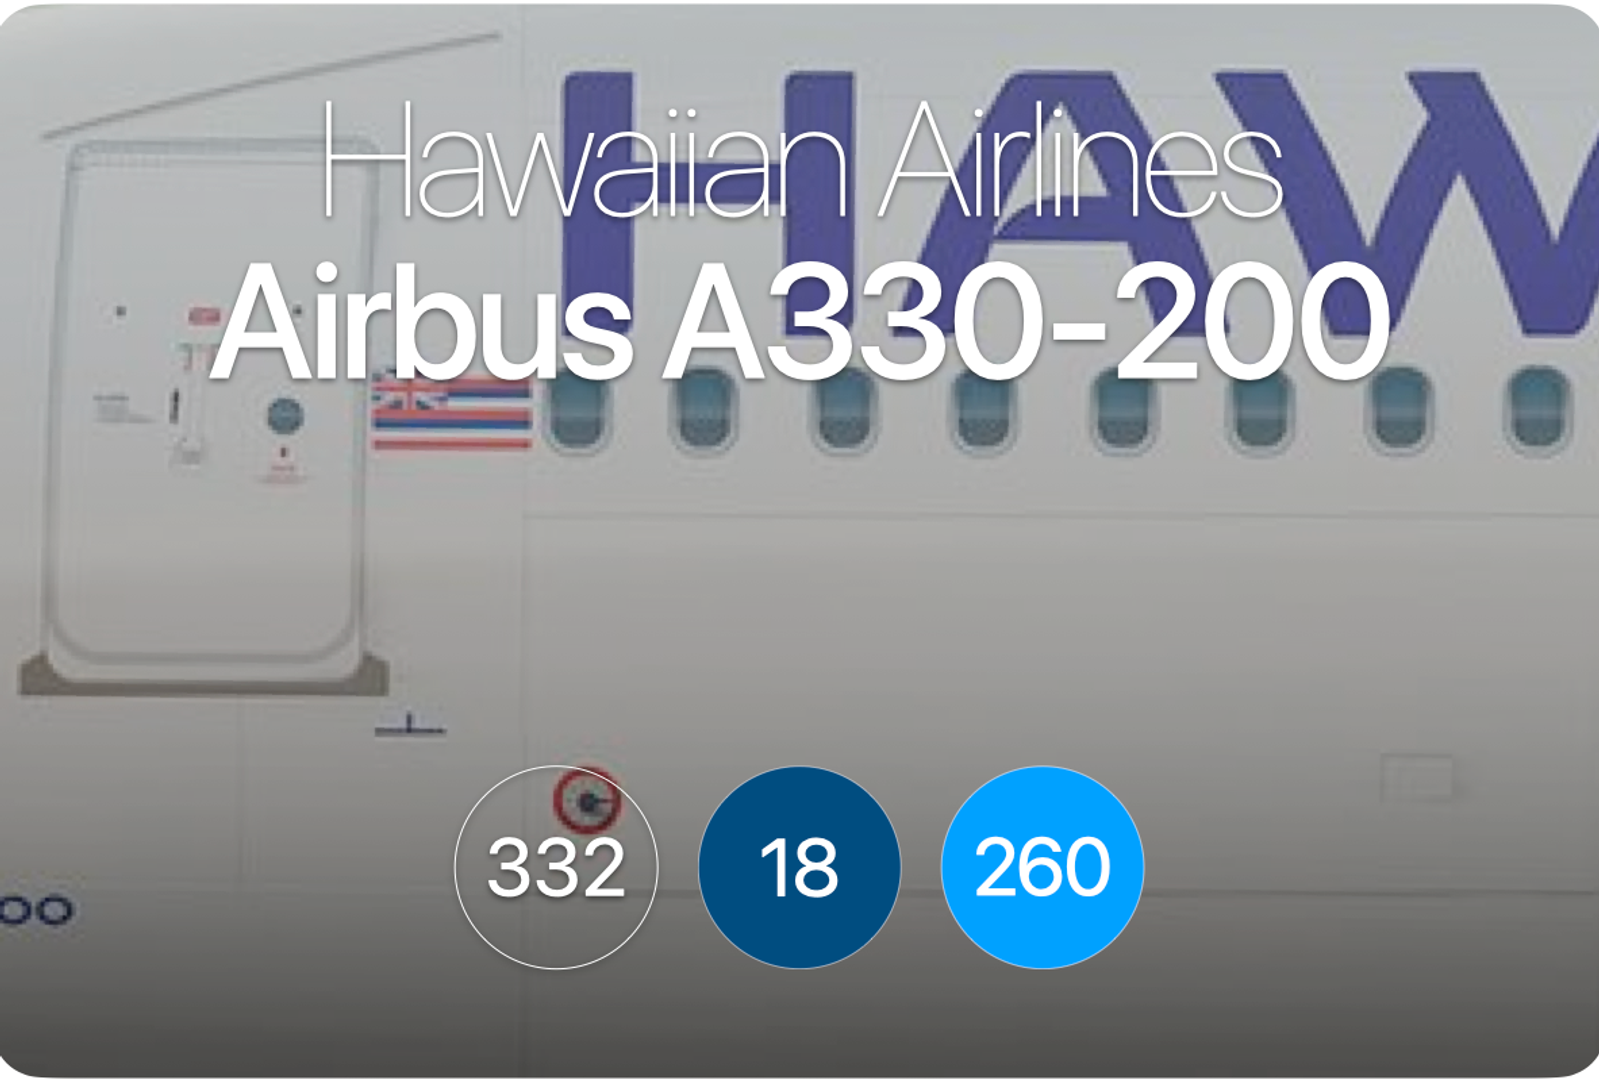 Ha Airbus A330 200 Aerolopa